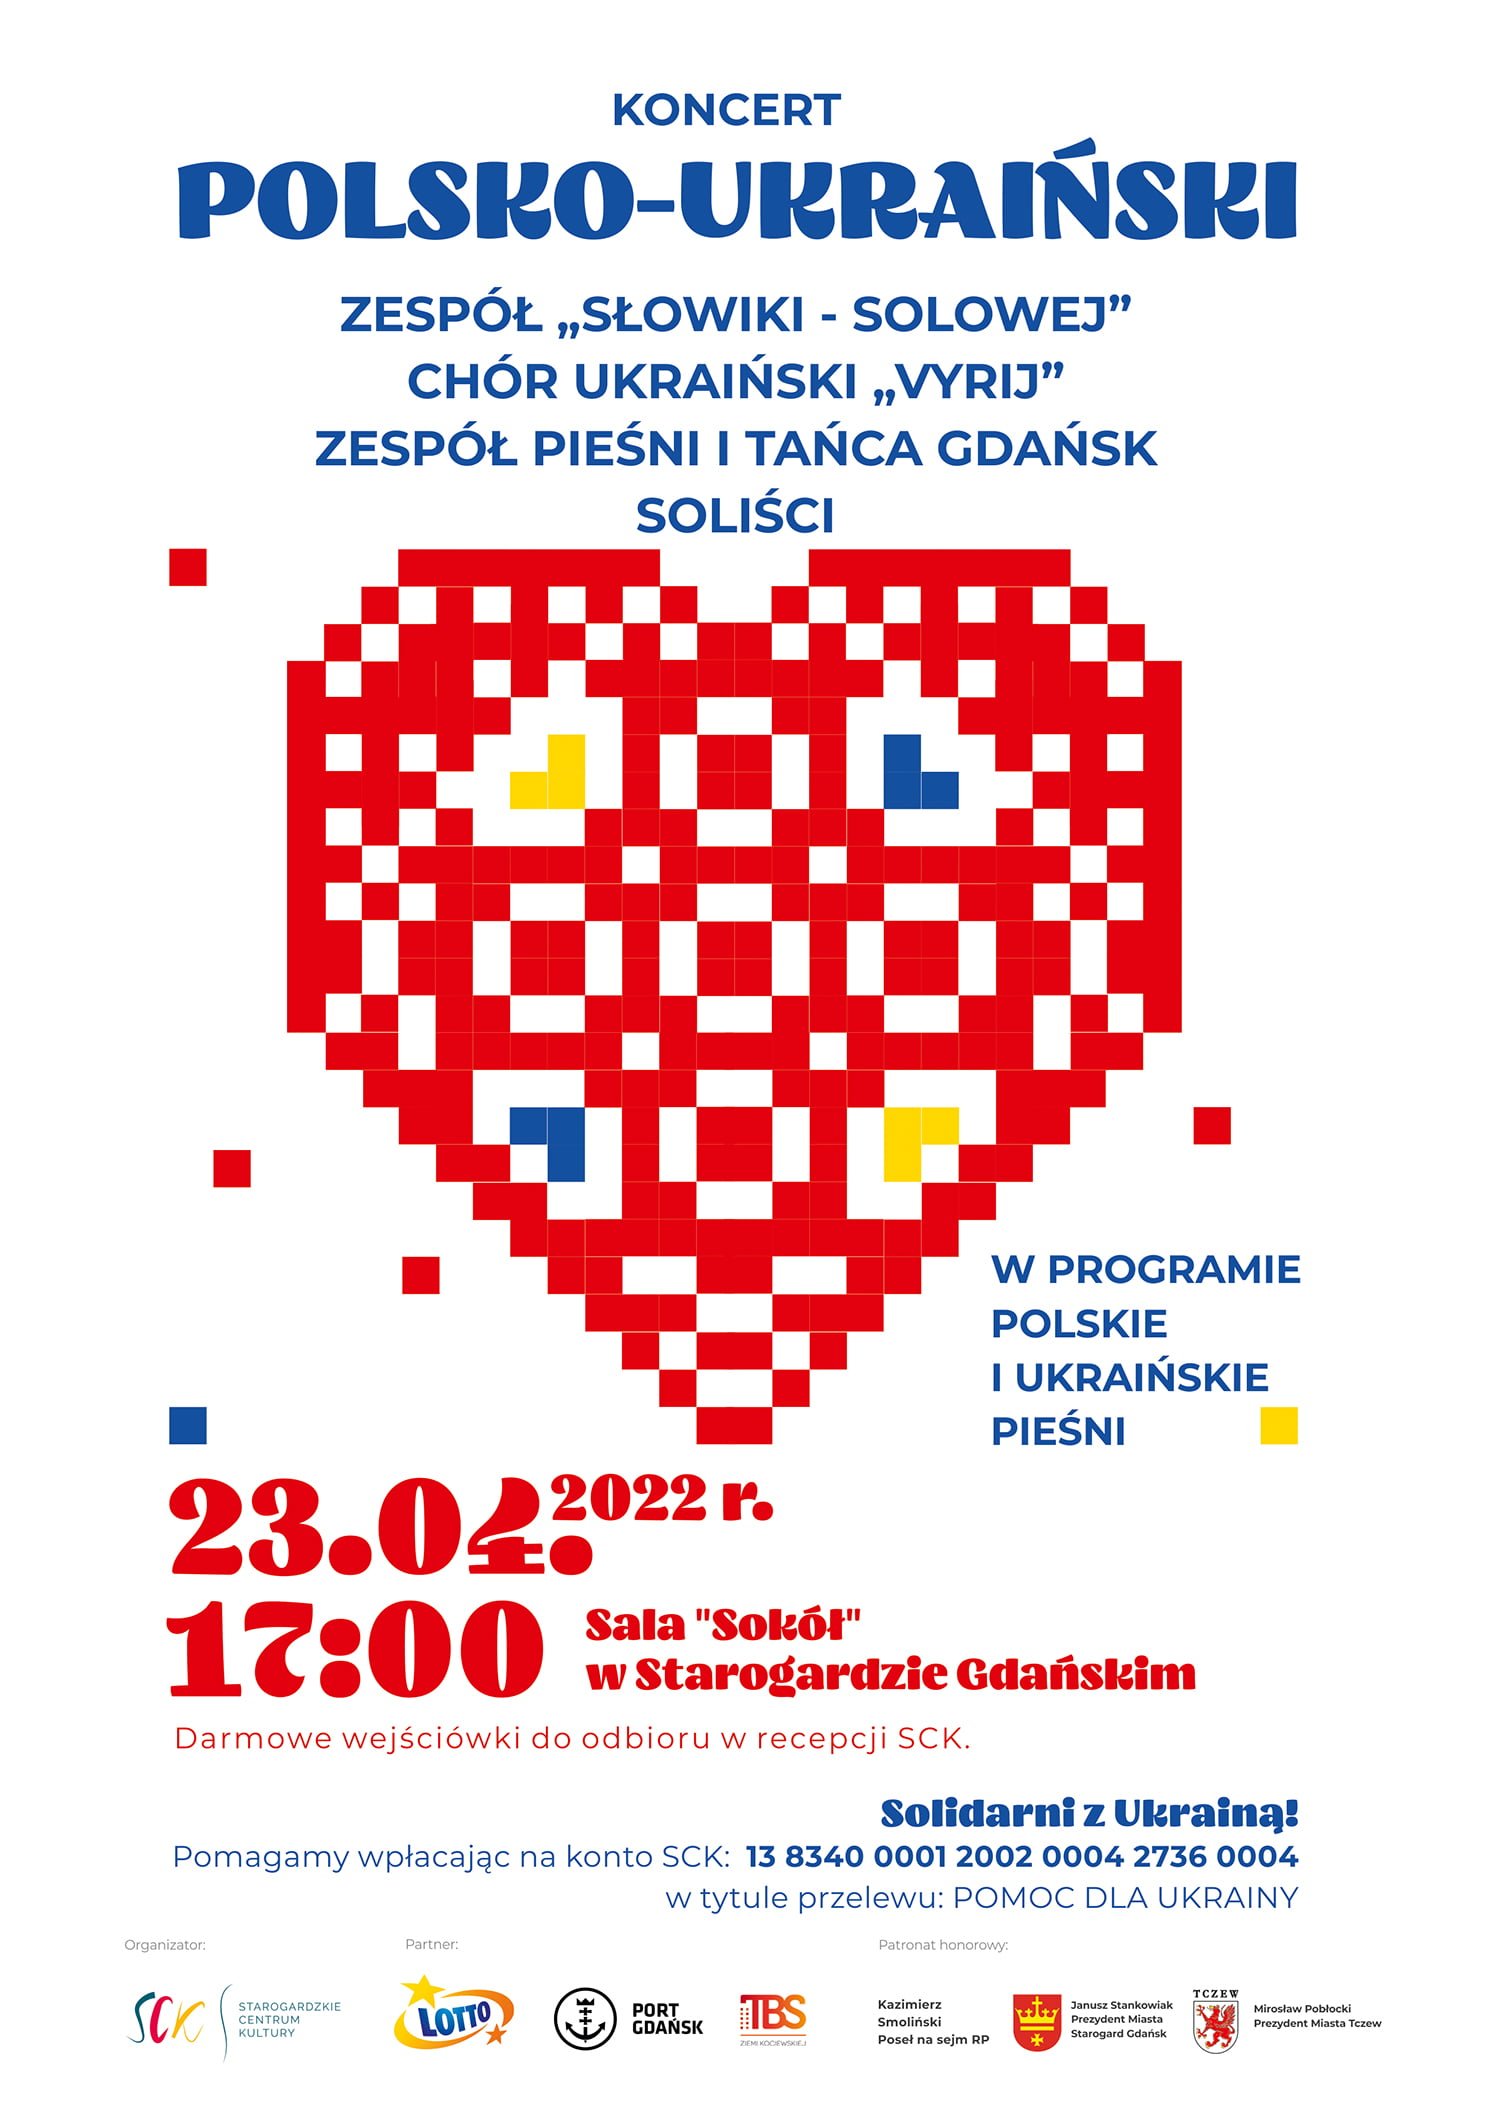 Wyjątkowy koncert polsko-ukraiński